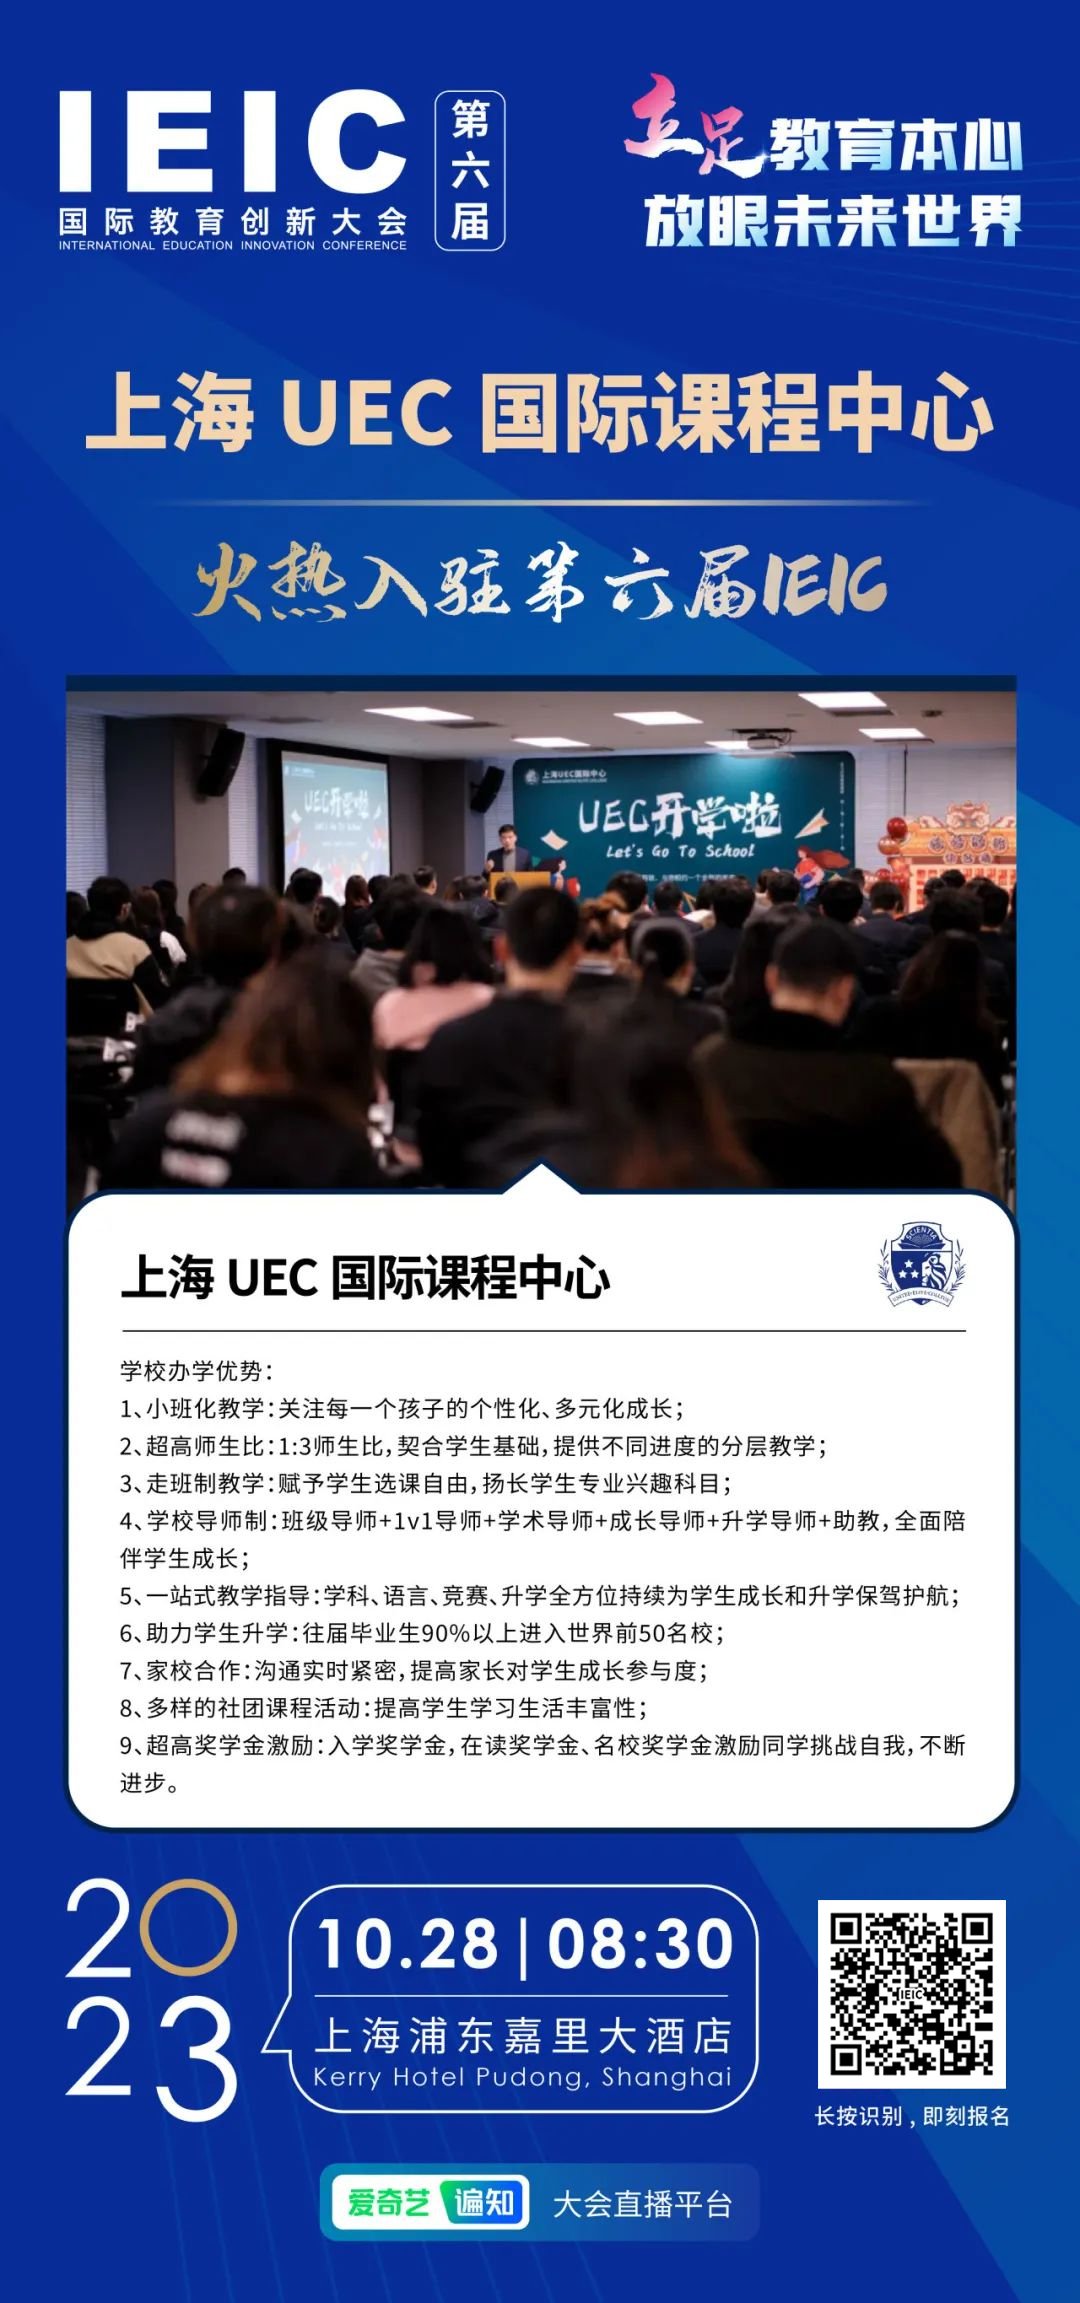 上海UEC国际课程中心 | 火热入驻第六届IEIC国际教育创新大会